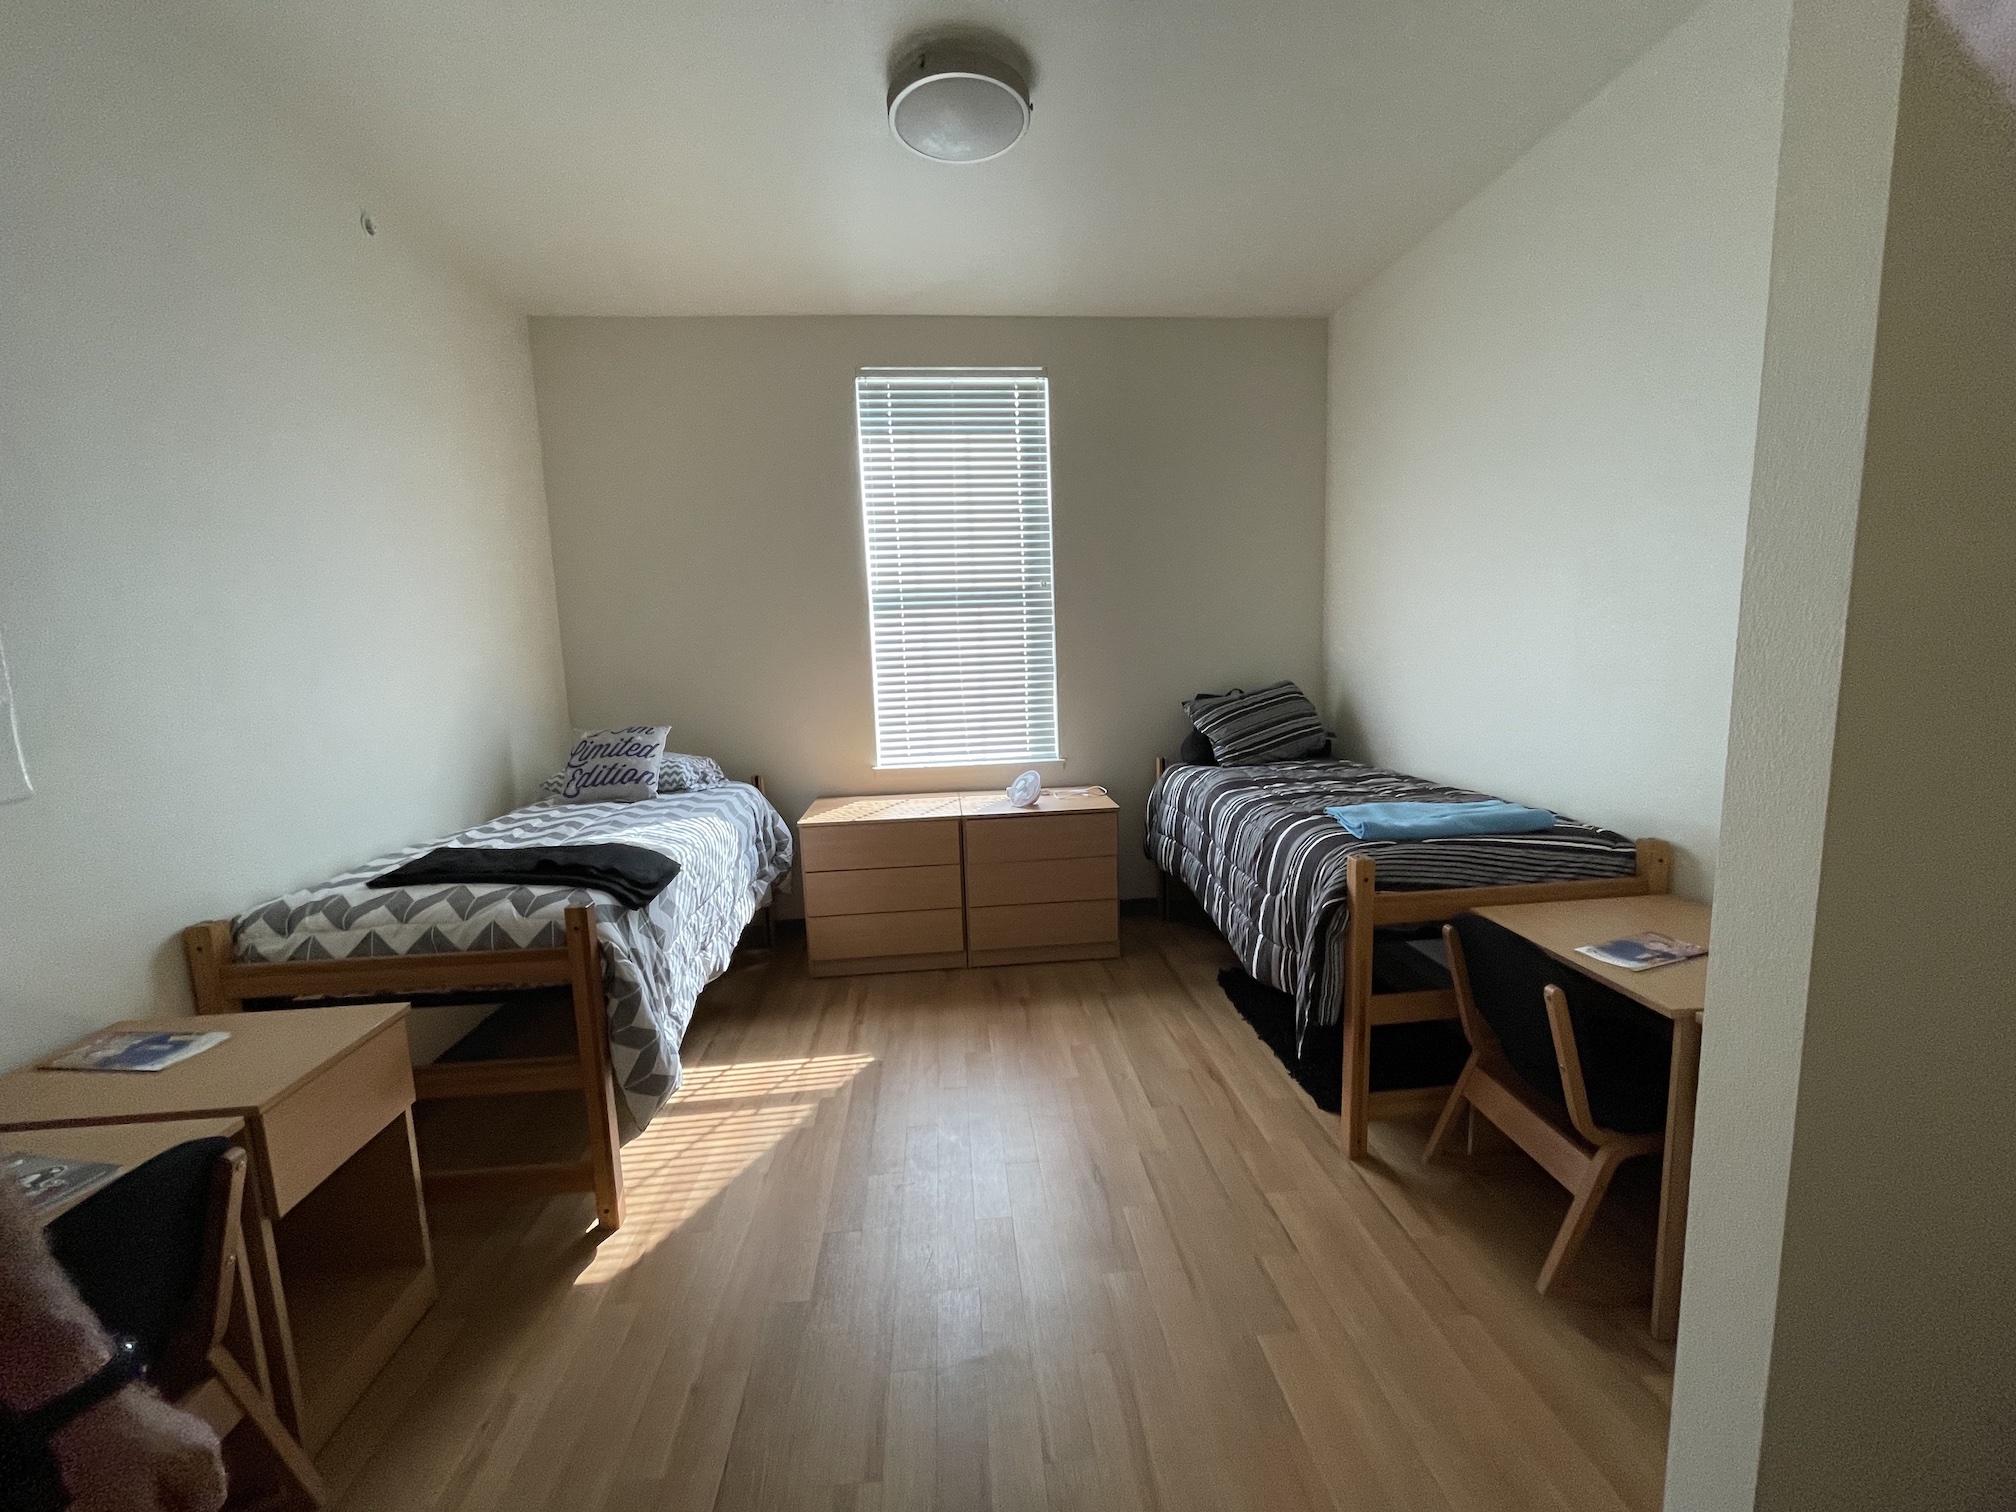 RSU Dorm Room | Oklahoma Boys State